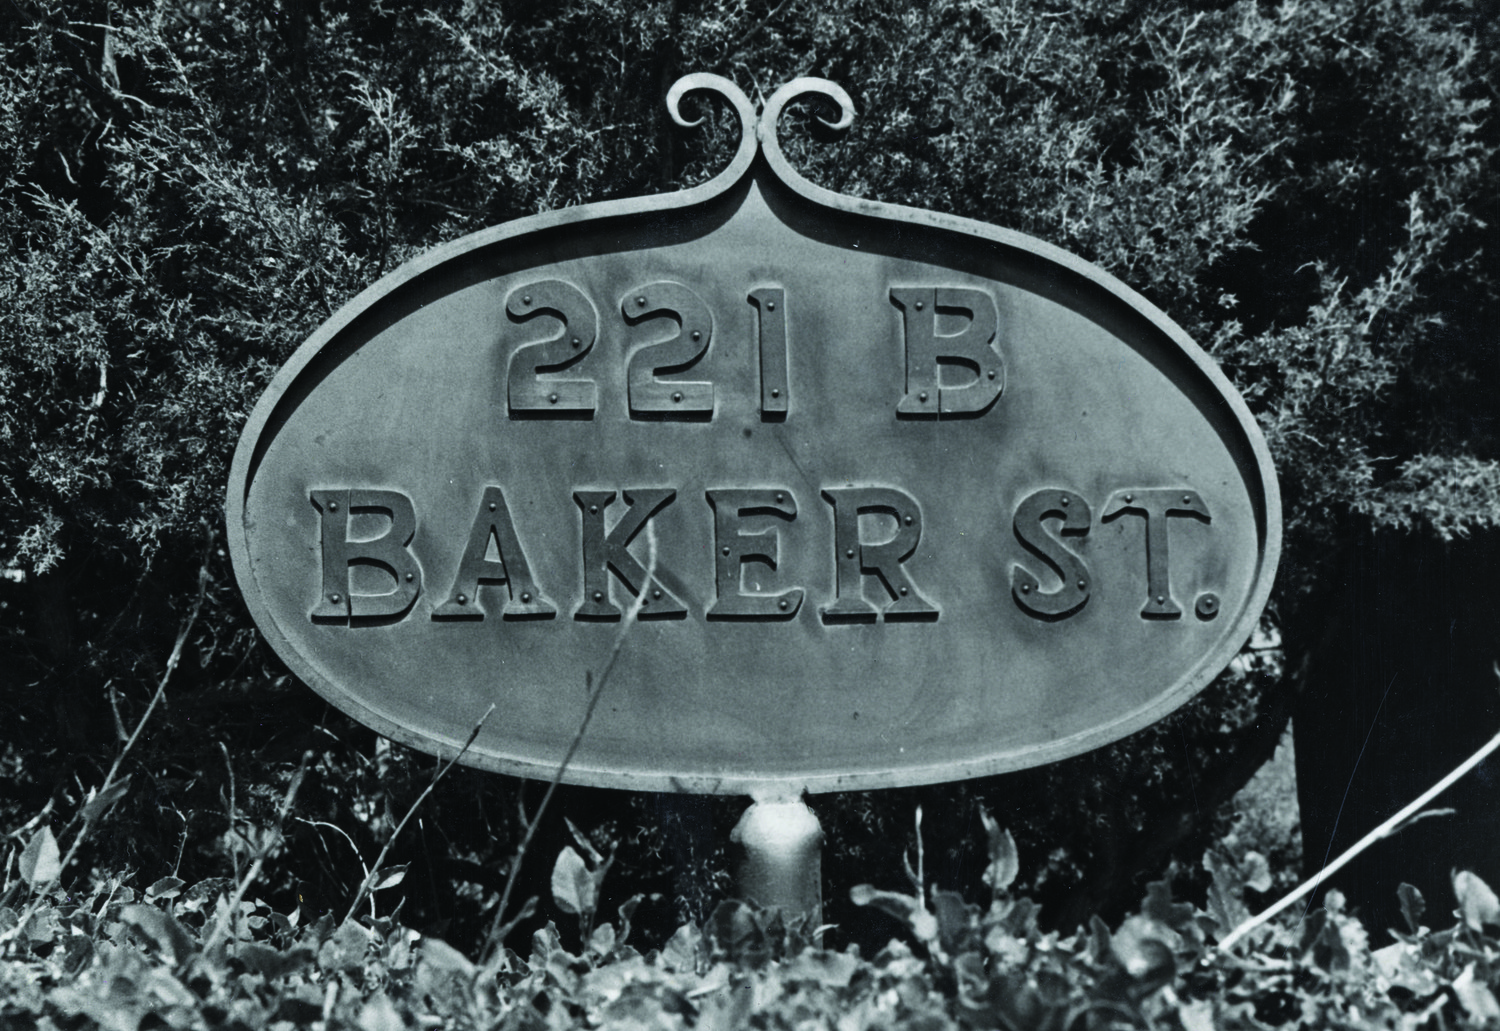 Baker-st.jpg